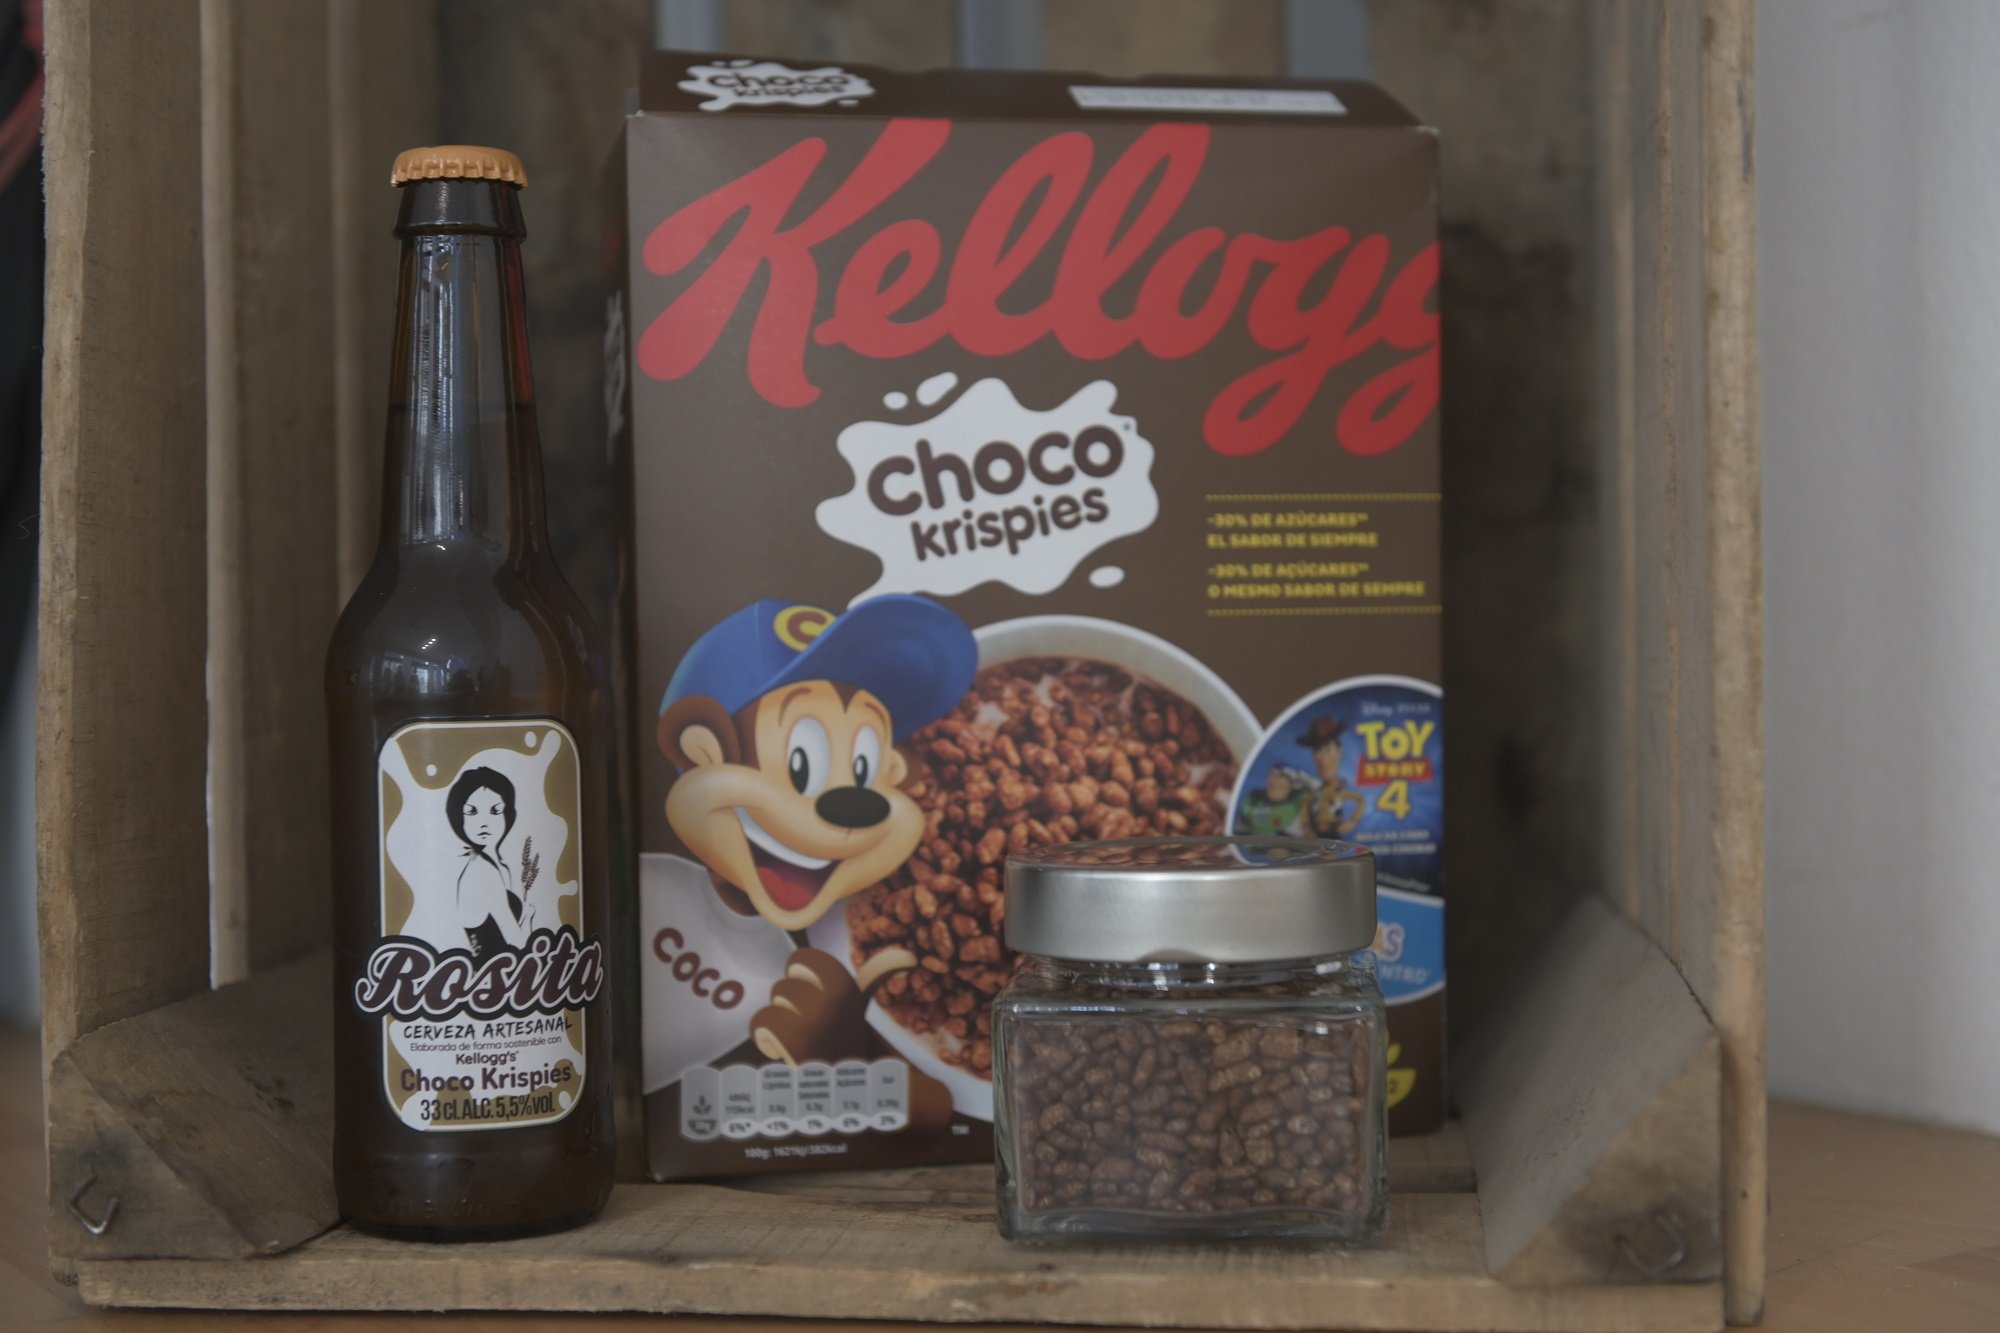 La última novedad de Kellogg's: cerveza artesana hecha con 'Choco Krispies'